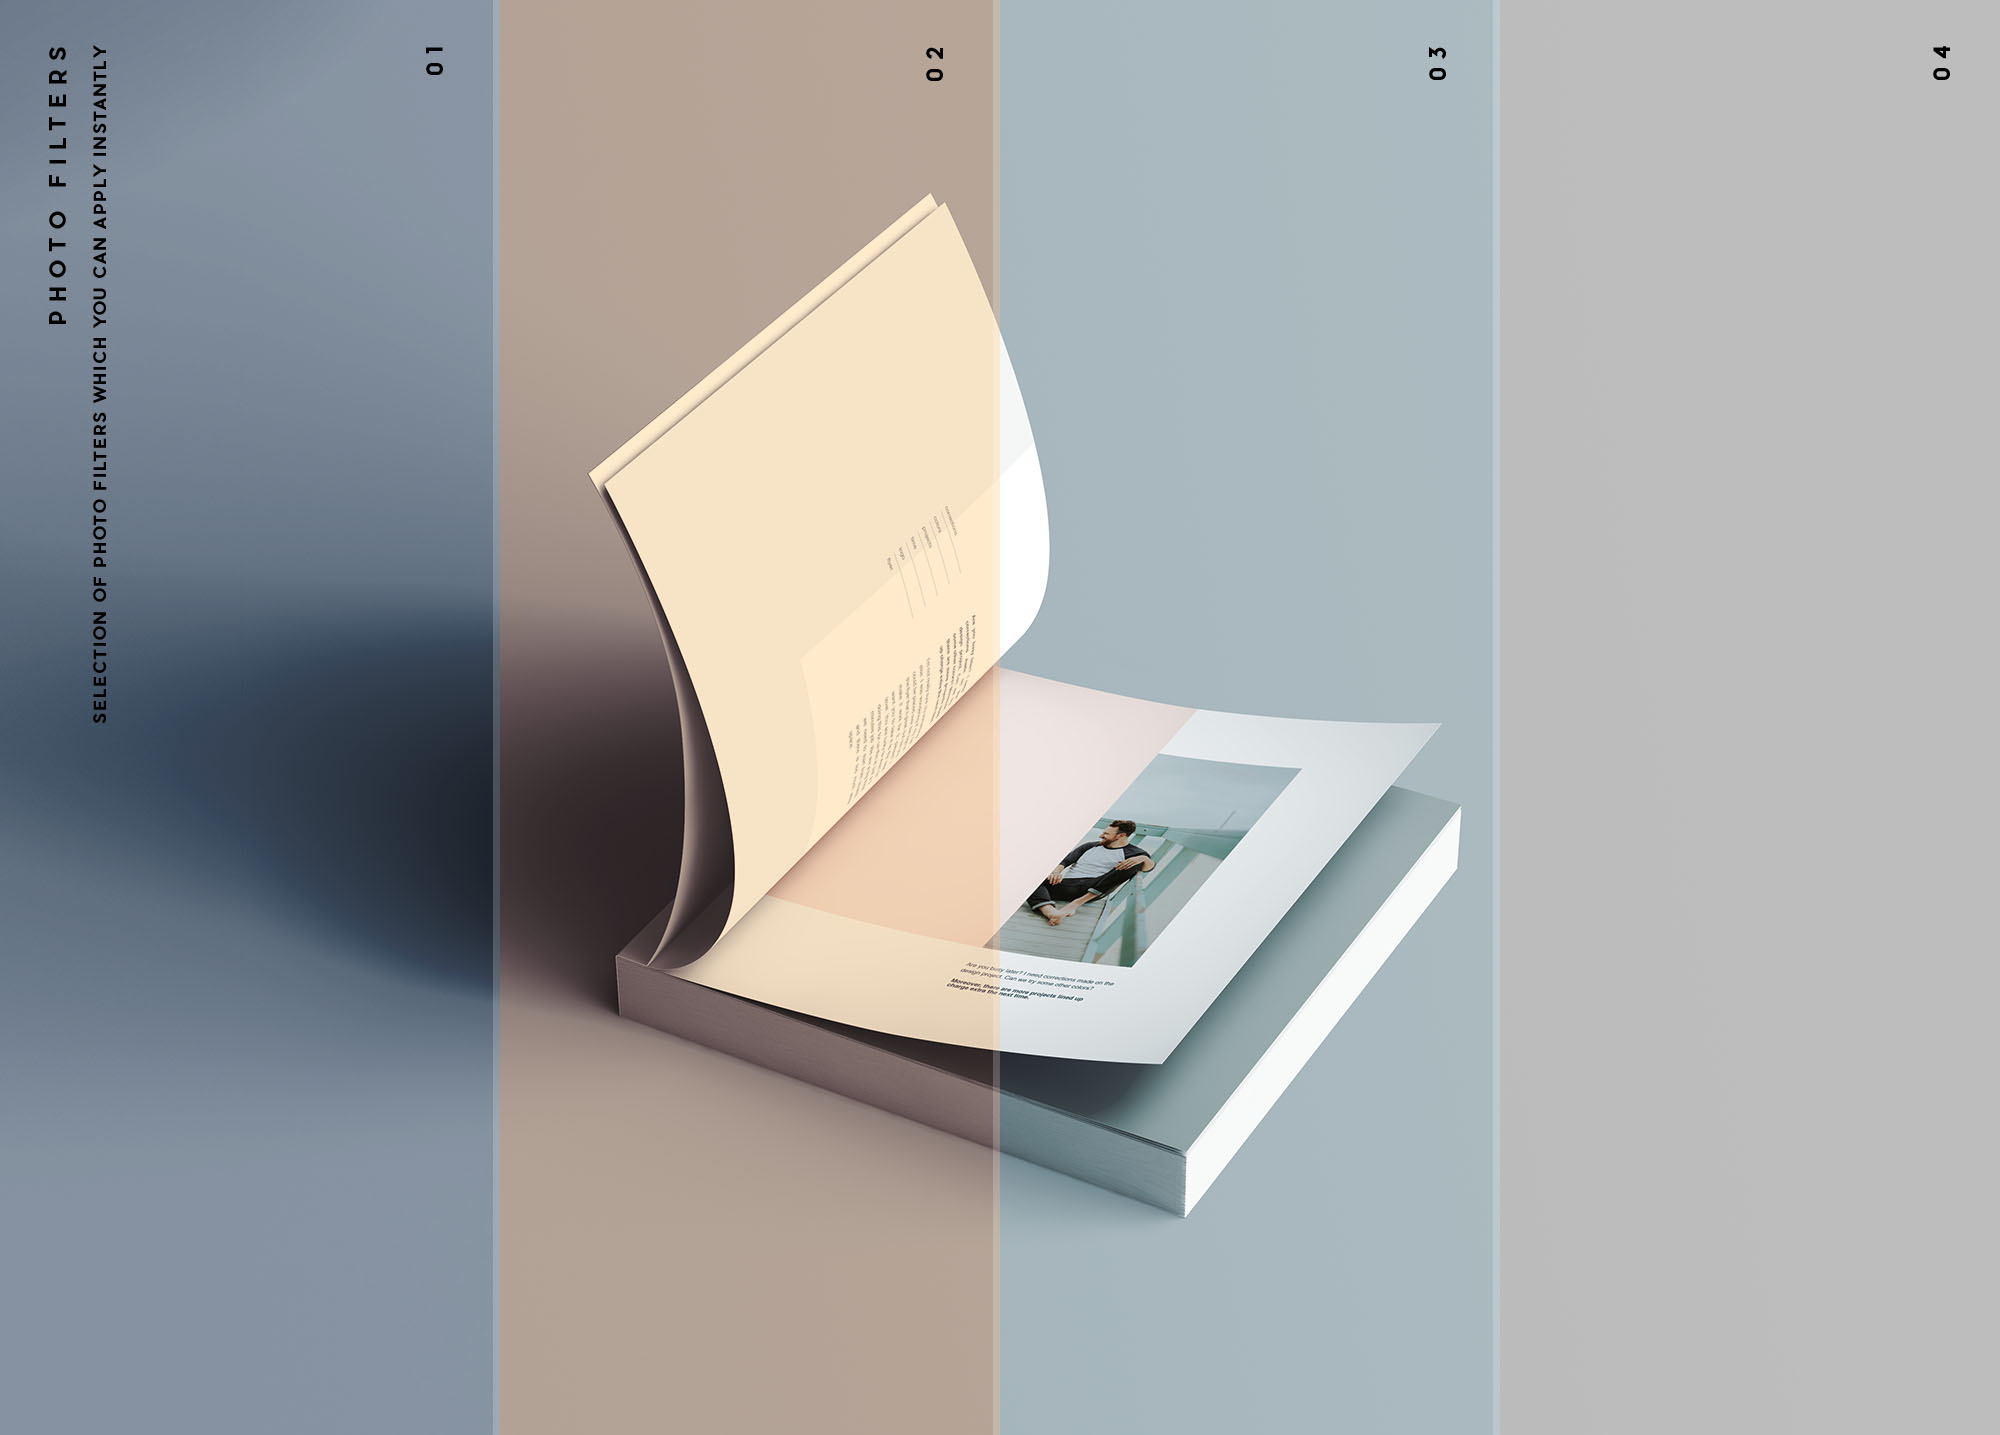 方形软封图书内页版式设计效果图样机普贤居精选 Square Softcover Book Mockup插图(10)